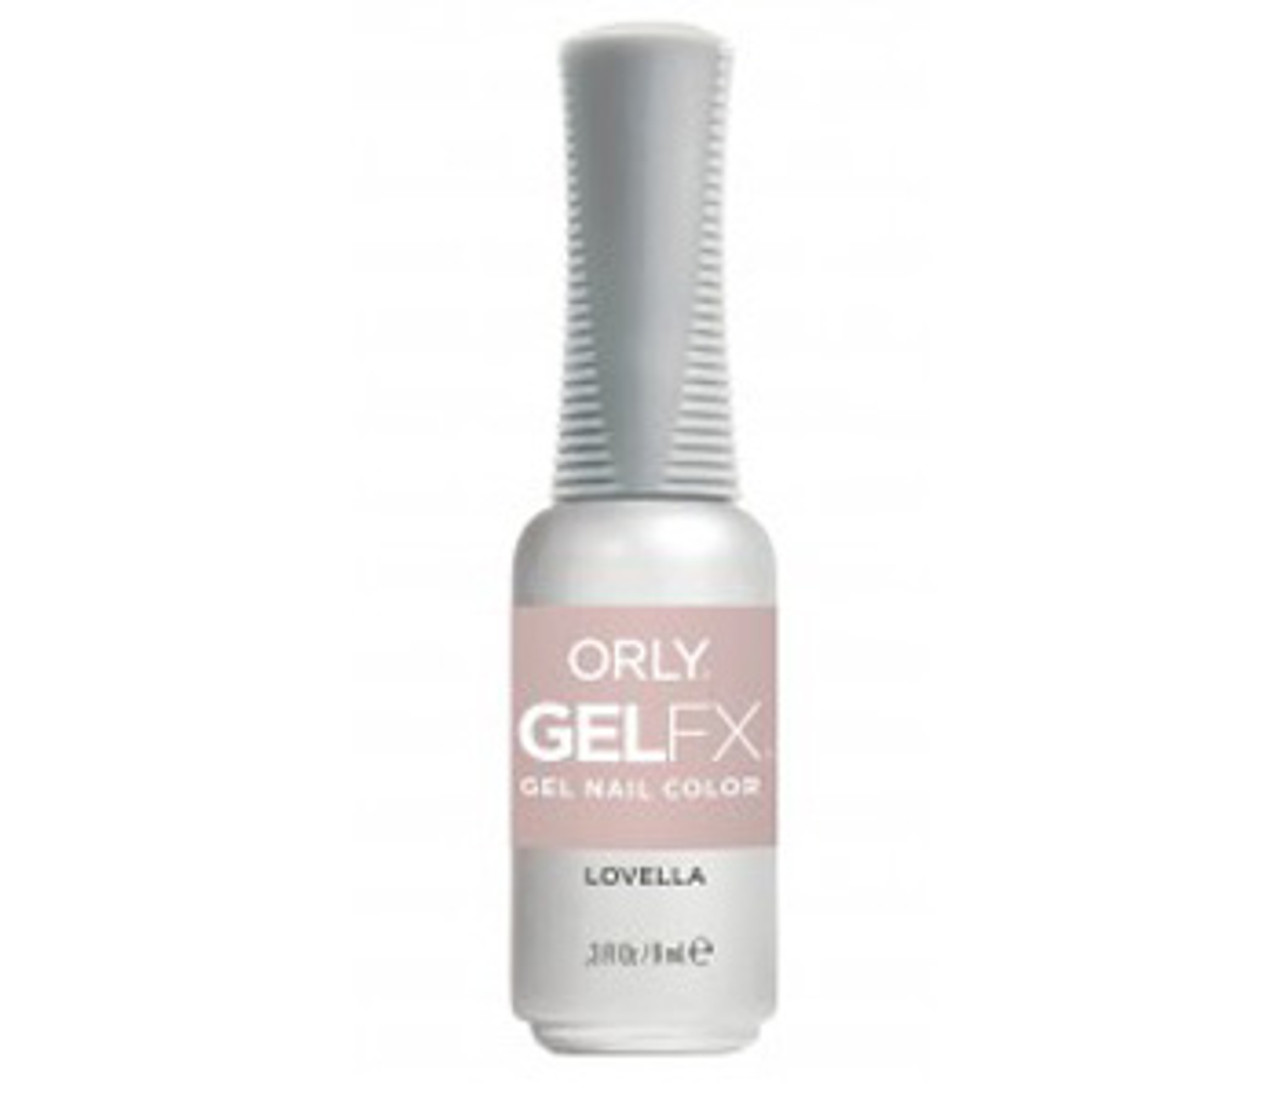 Orly Gel FX Soak-Off Gel Lovella - Nude Creme- .3 fl oz / 9 ml